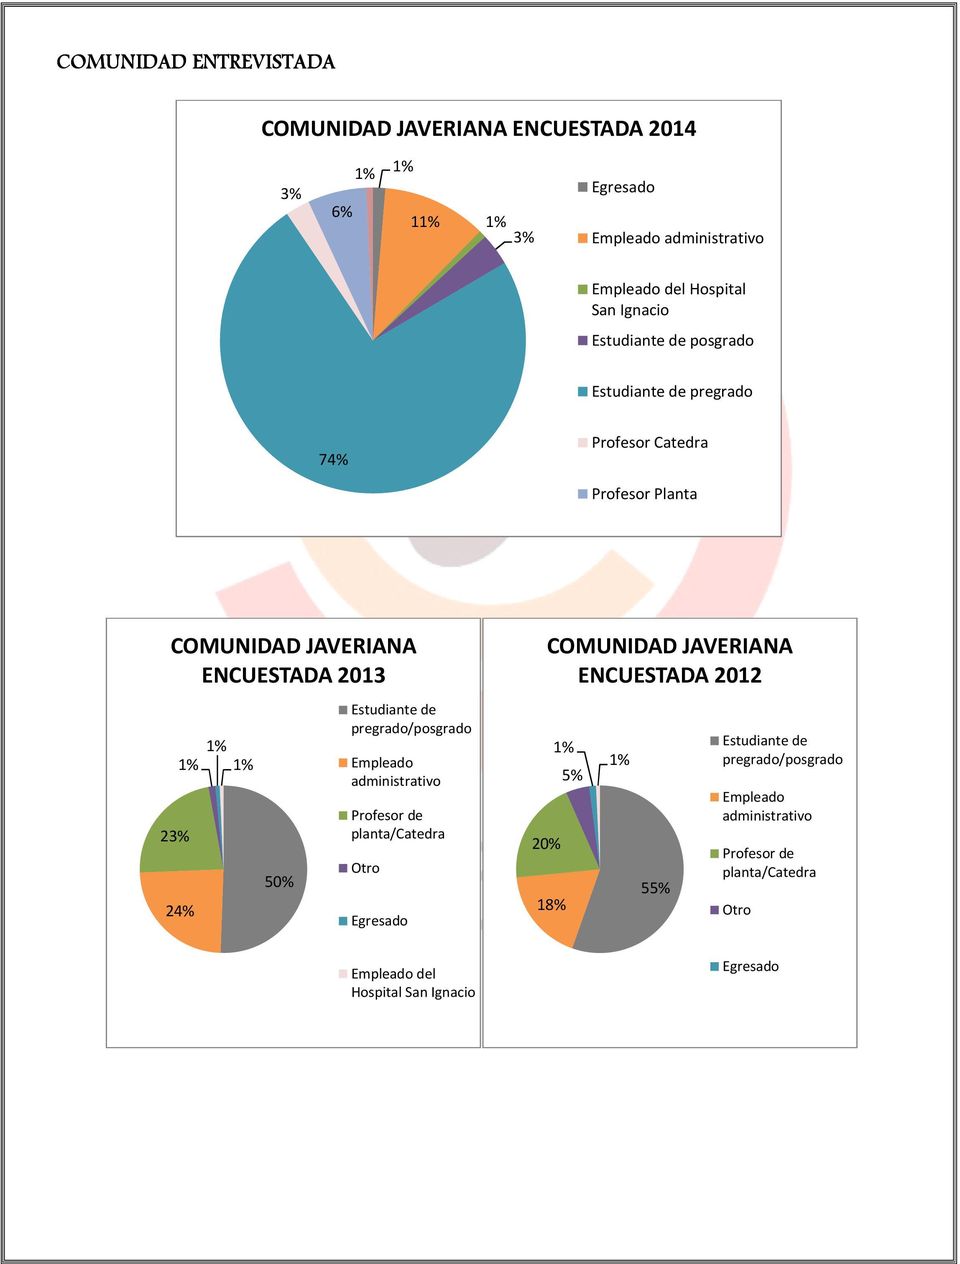 24% 50% Estudiante de pregrado/posgrado Empleado administrativo Profesor de planta/catedra Otro Egresado 20% COMUNIDAD JAVERIANA ENCUESTADA